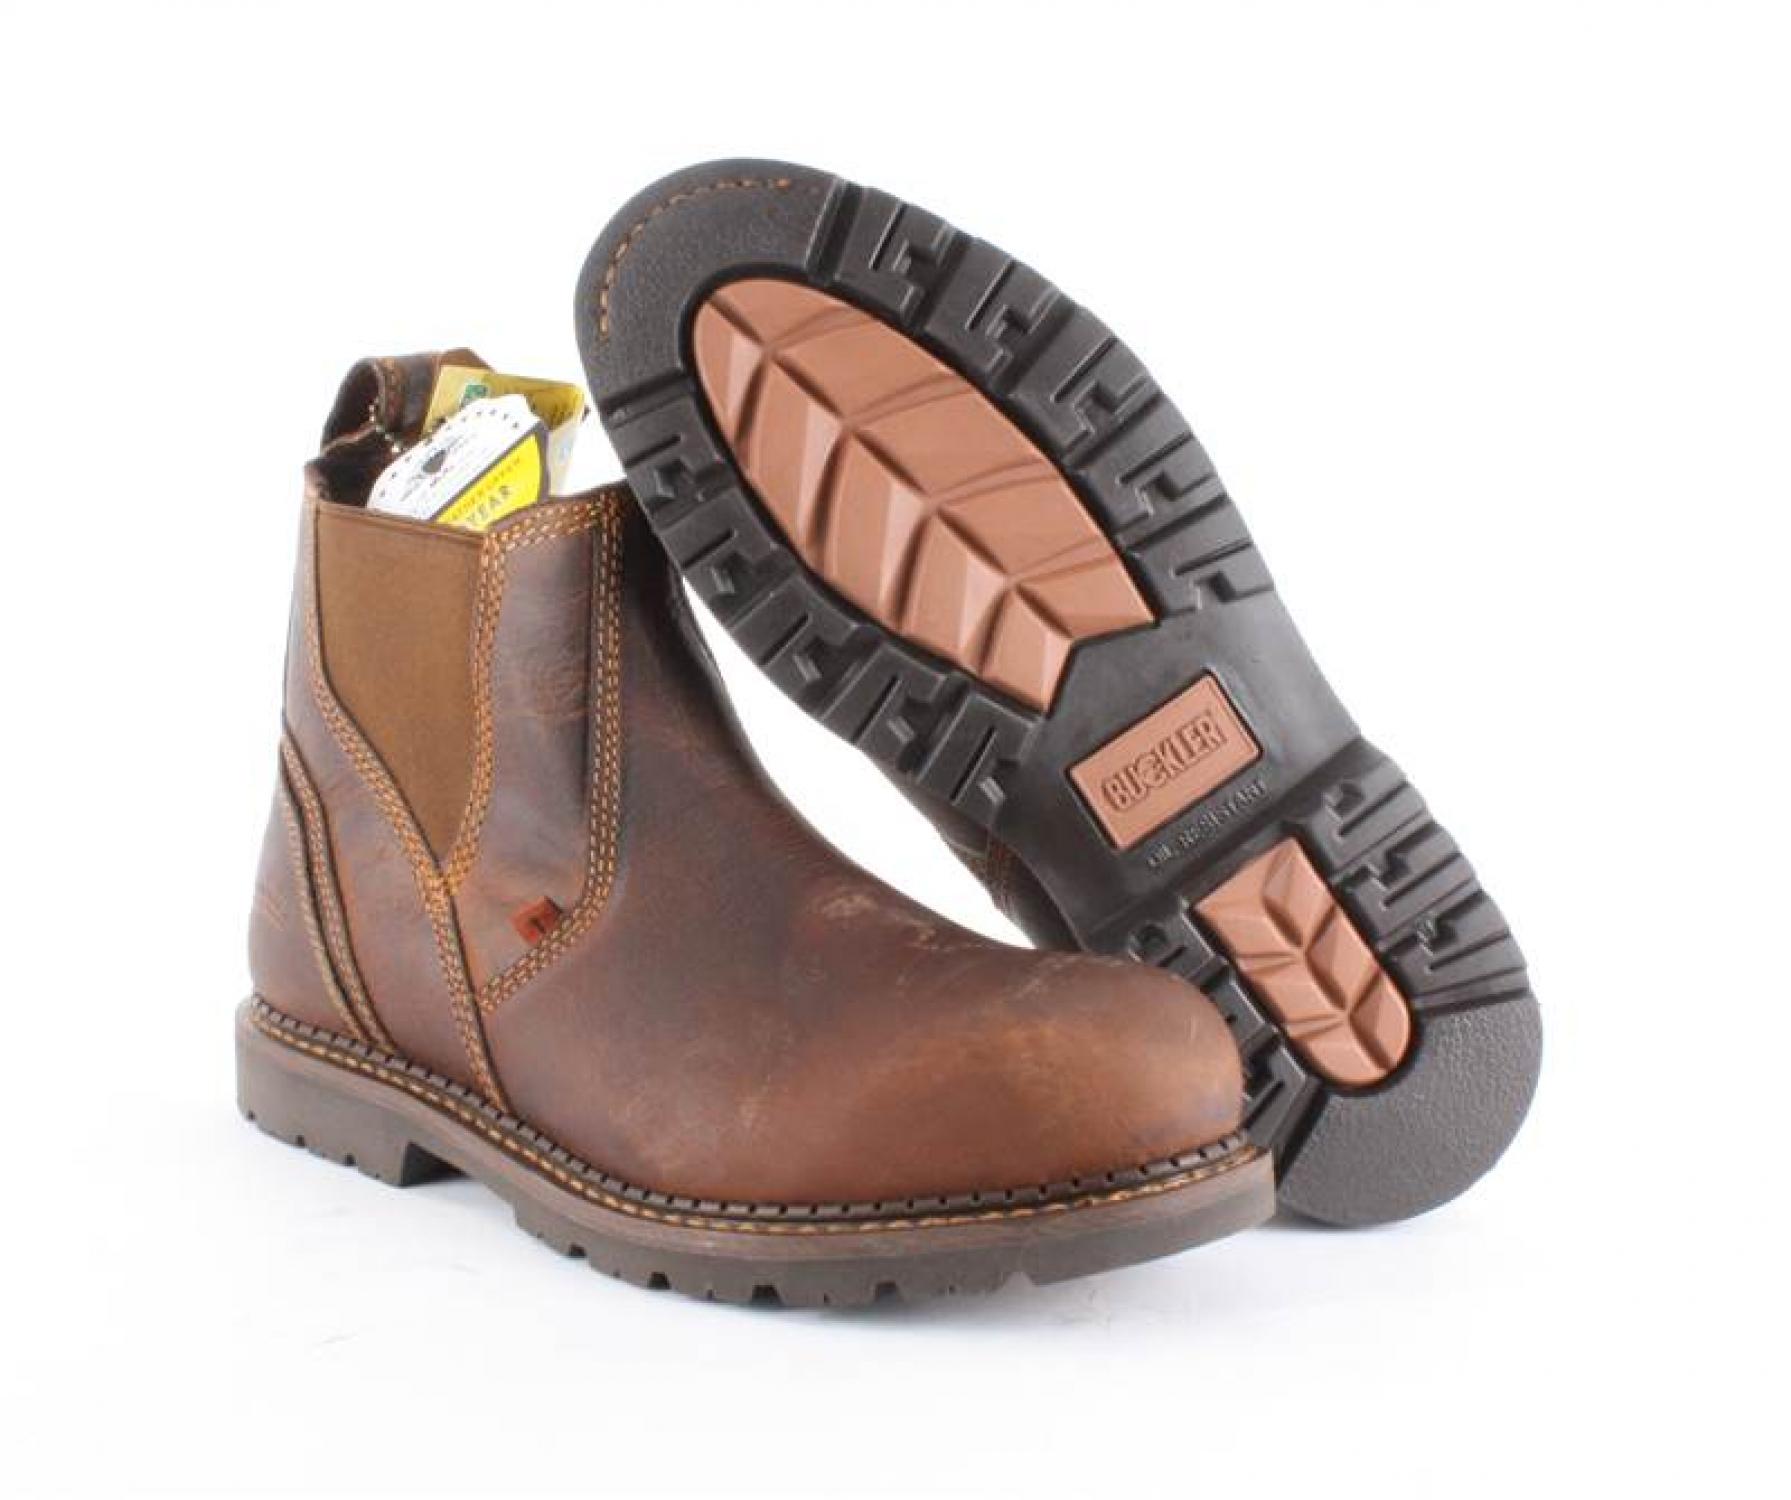 buckler safety dealer boots